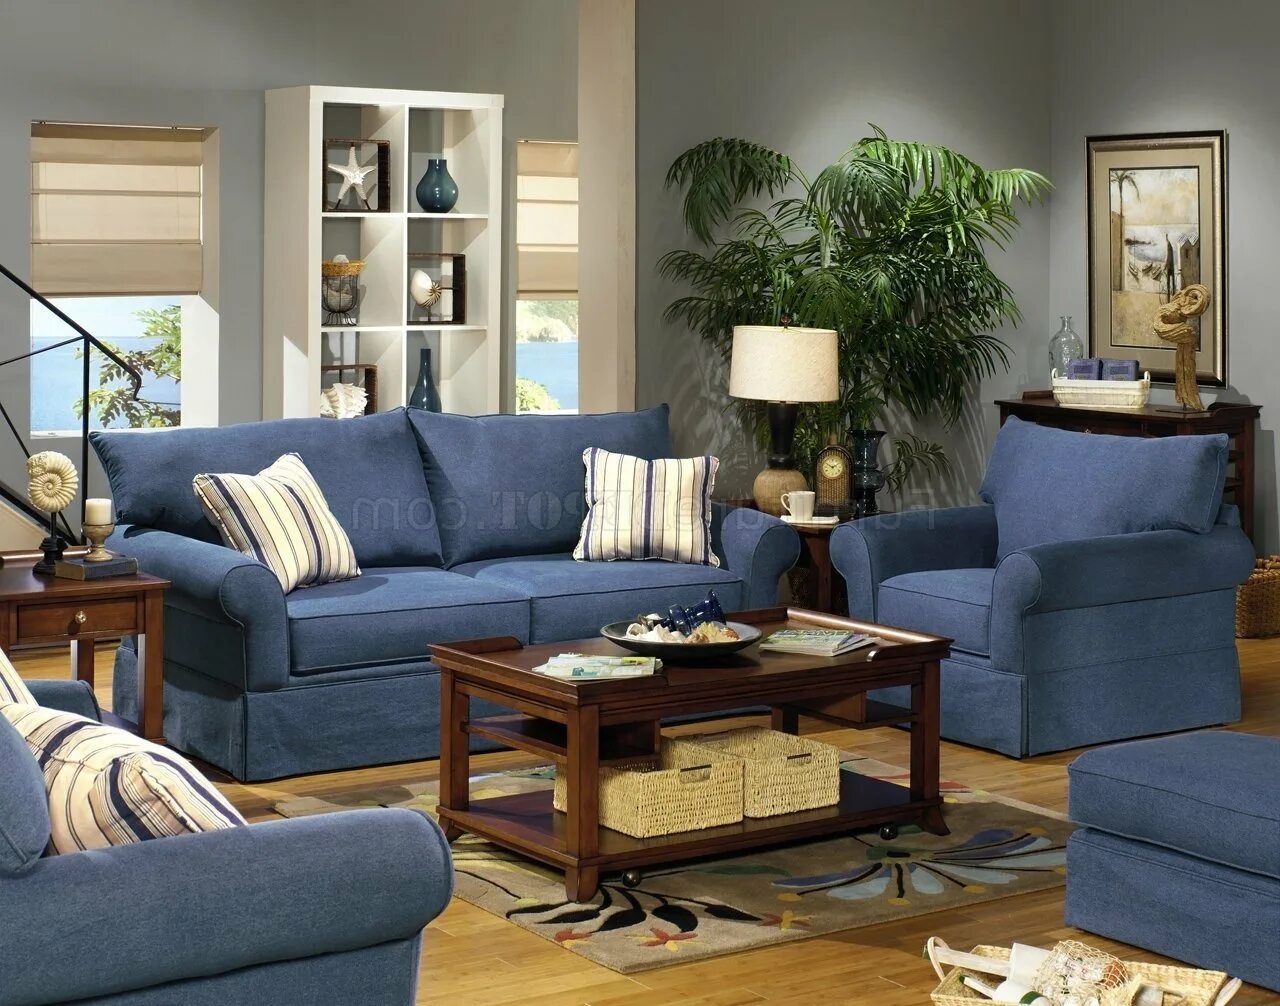 Подходит к интерьеру. Синий диван в интерьере гостиной. Синяя мебель в интерьере. Синяя мебель в интерьере гостиной. Гостиная в джинсовом стиле.